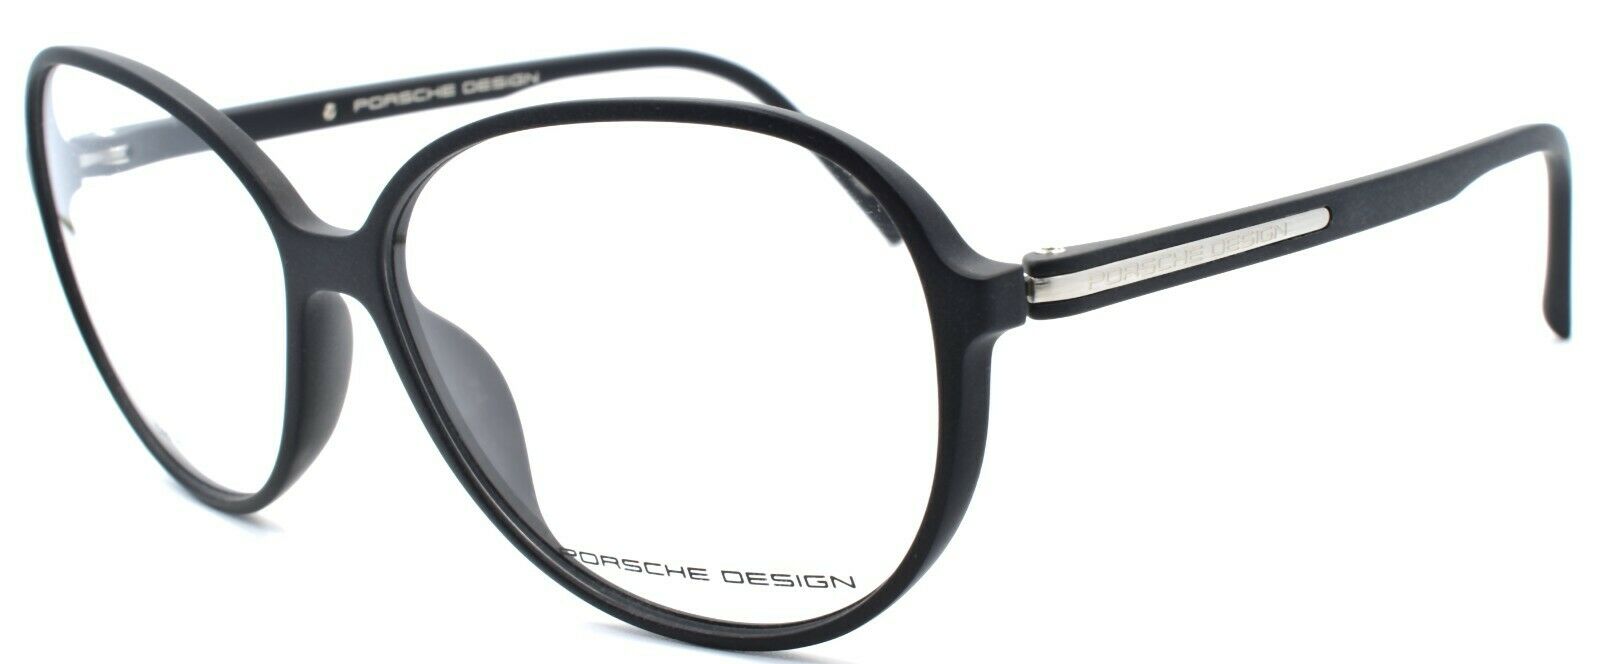 1-Porsche Design P8279 A Women's Eyeglasses Frames 57-13-140 Black-4046901901400-IKSpecs